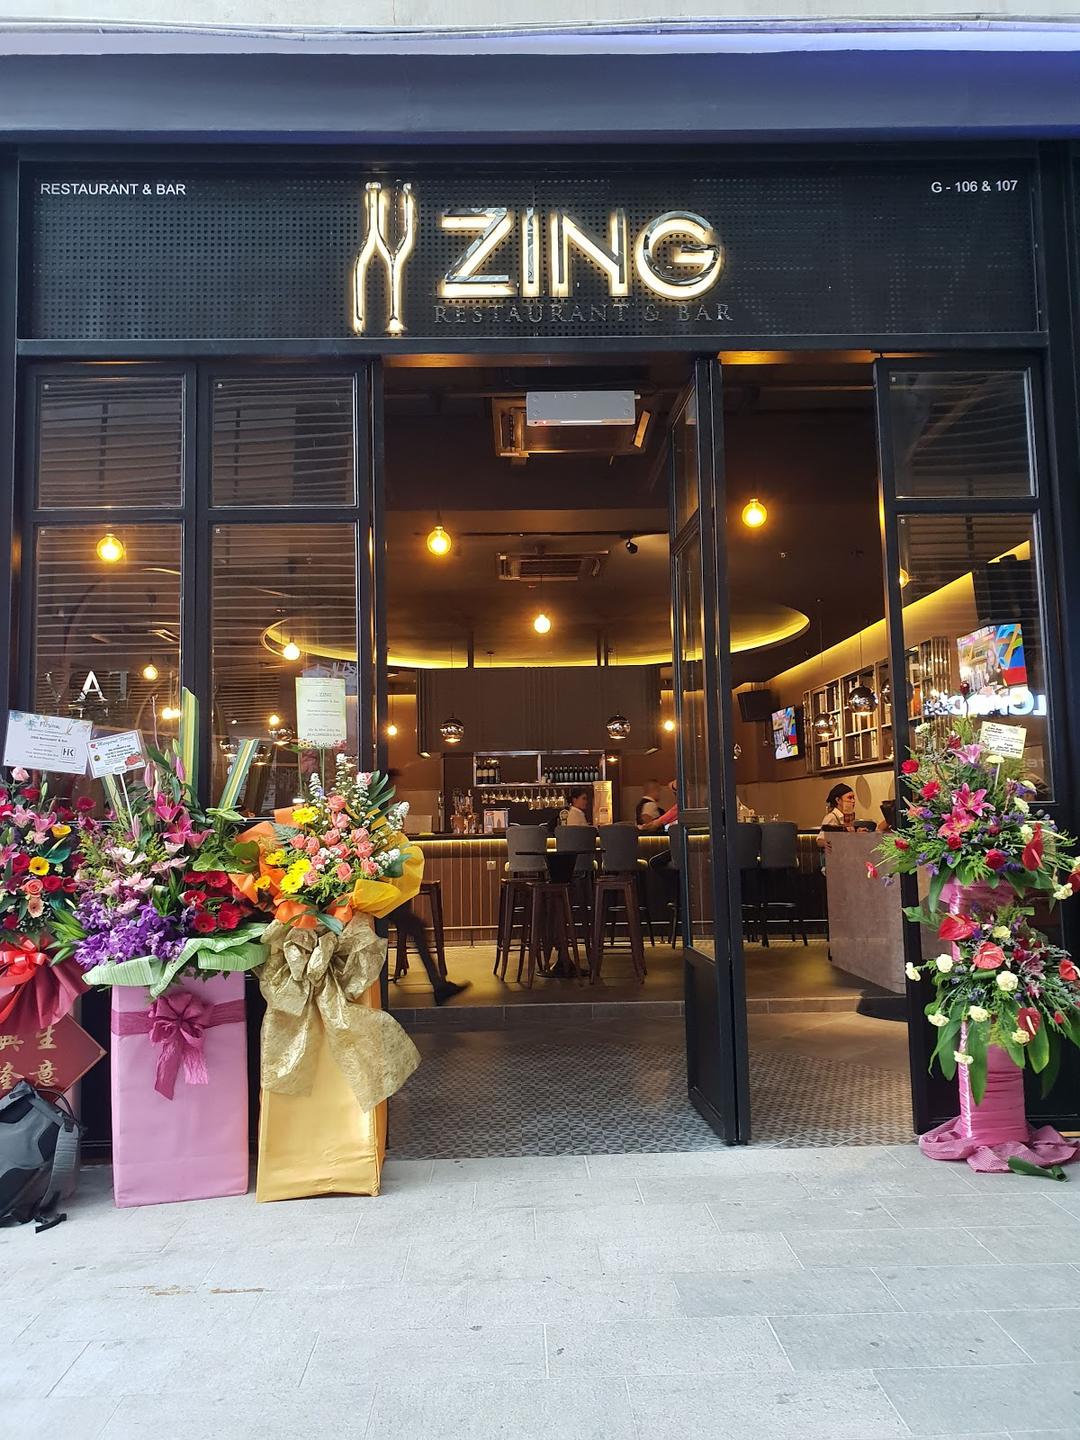 Photo of Zing Restaurant & Bar - Kota Kinabalu, Sabah, Malaysia